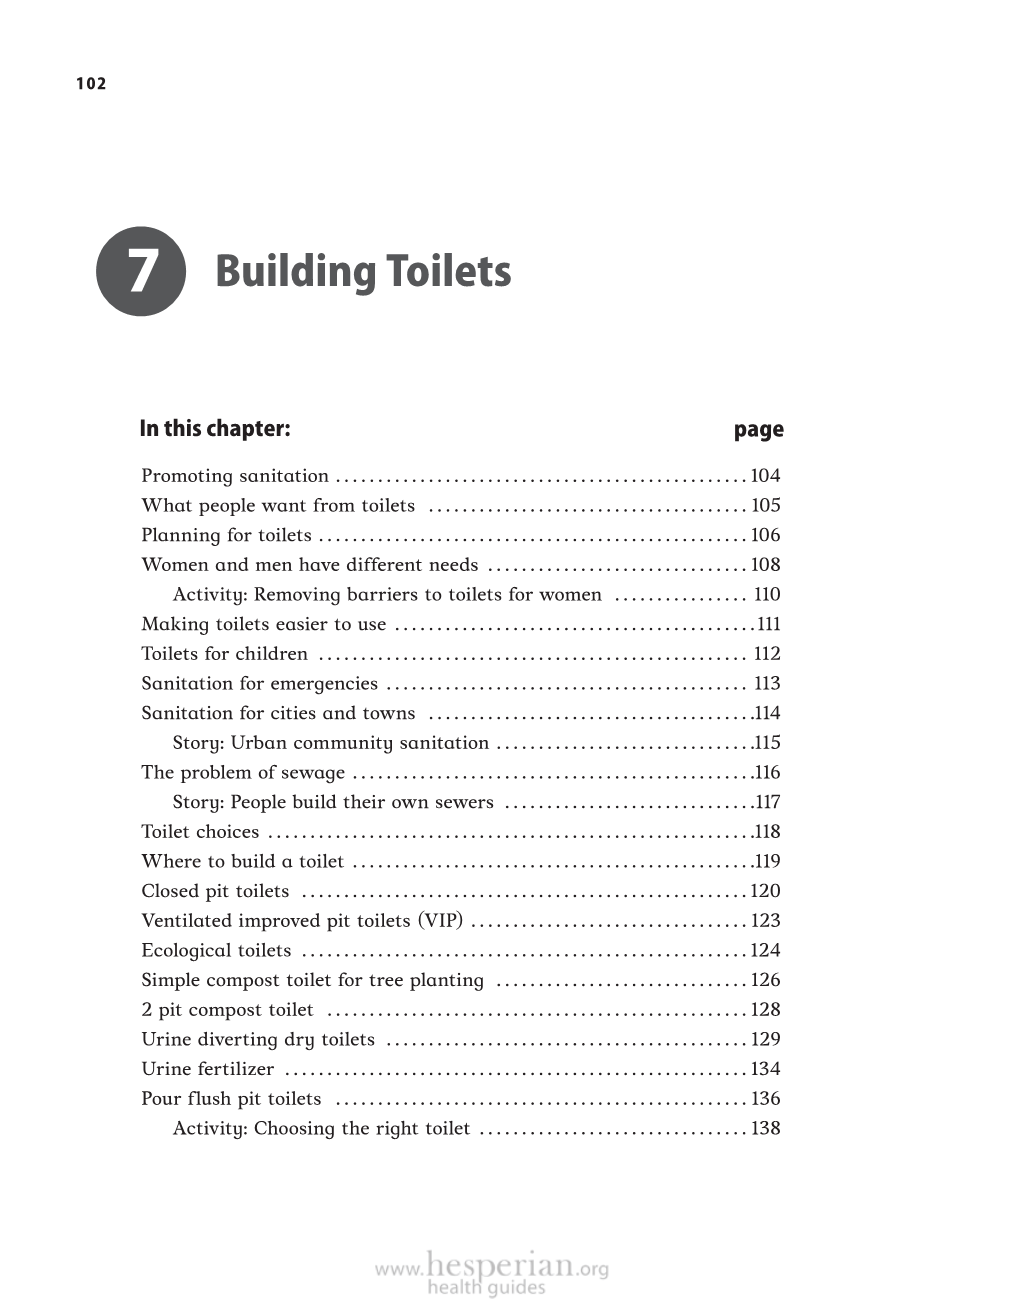 Building Toilets